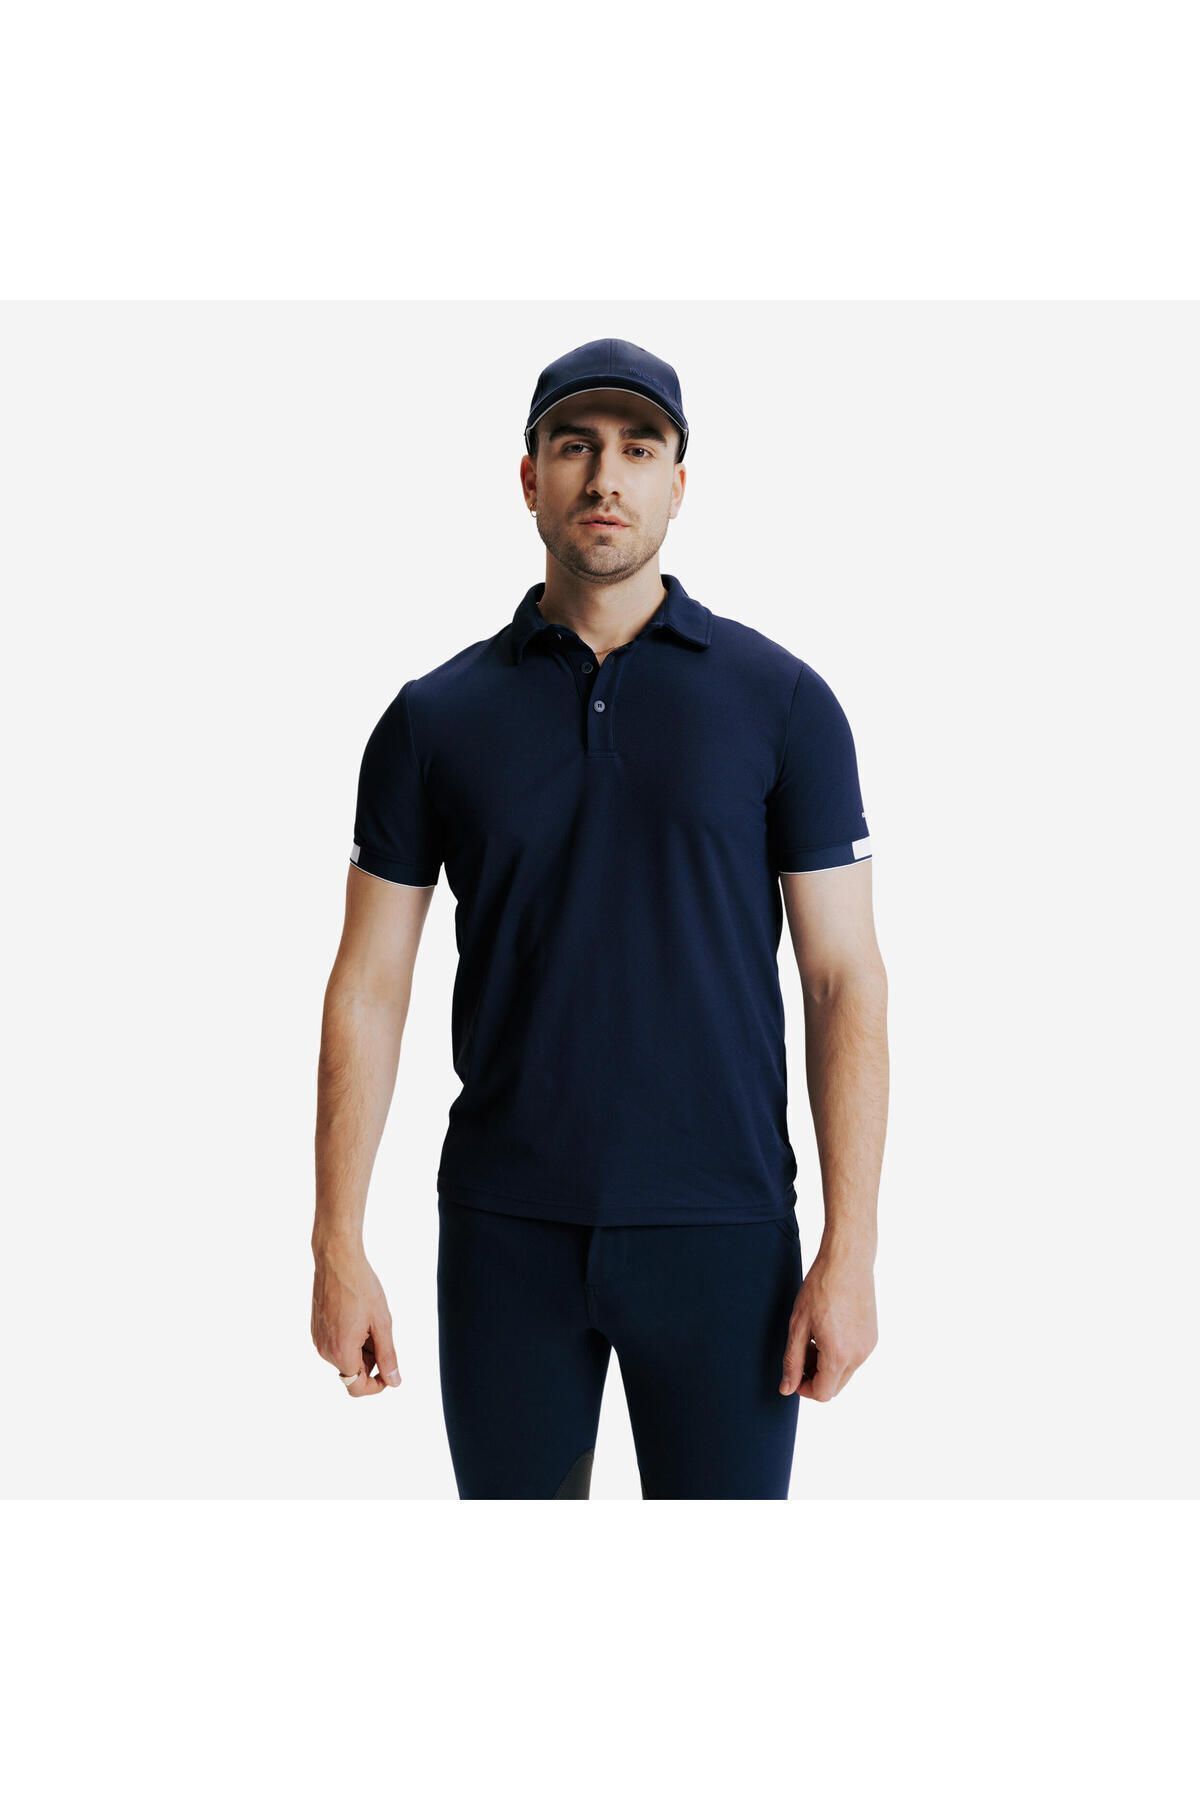 Decathlon Erkek Binicilik Polo Tişörtü - Mavi